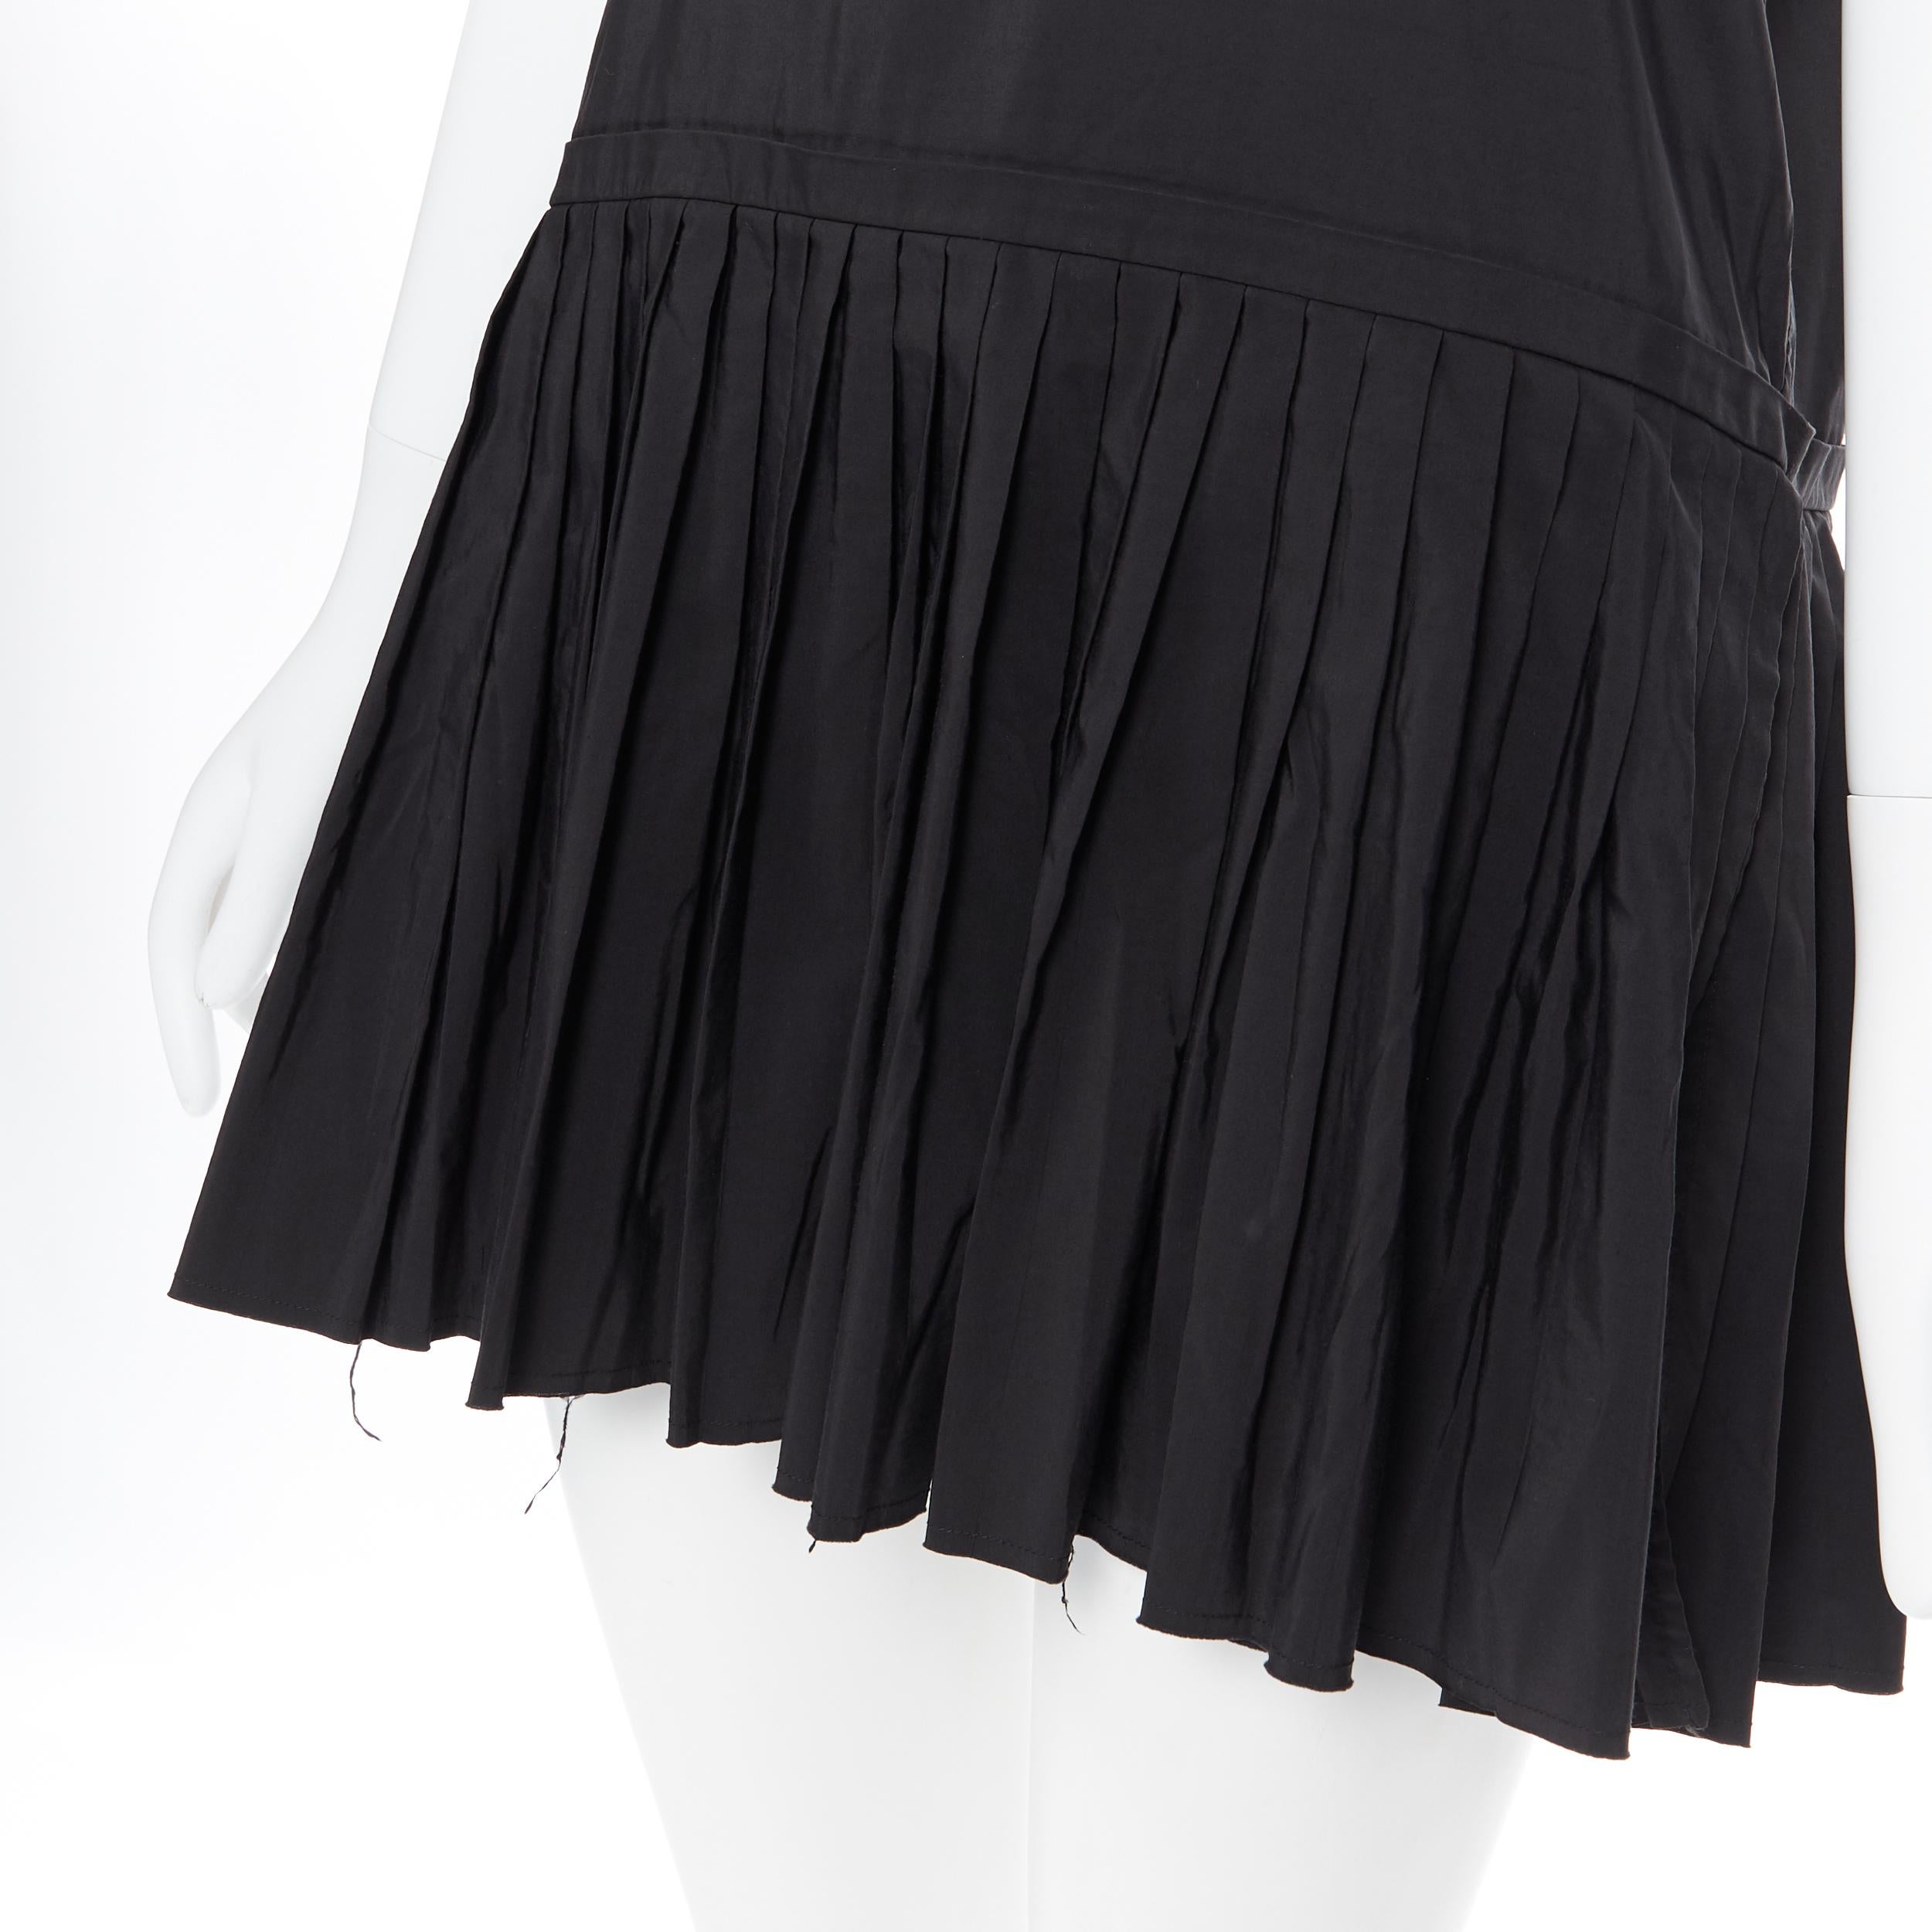 YVES SAINT LAURENT 2010 black pleated skirt side slit tunic dress EU39 / 15.5 5